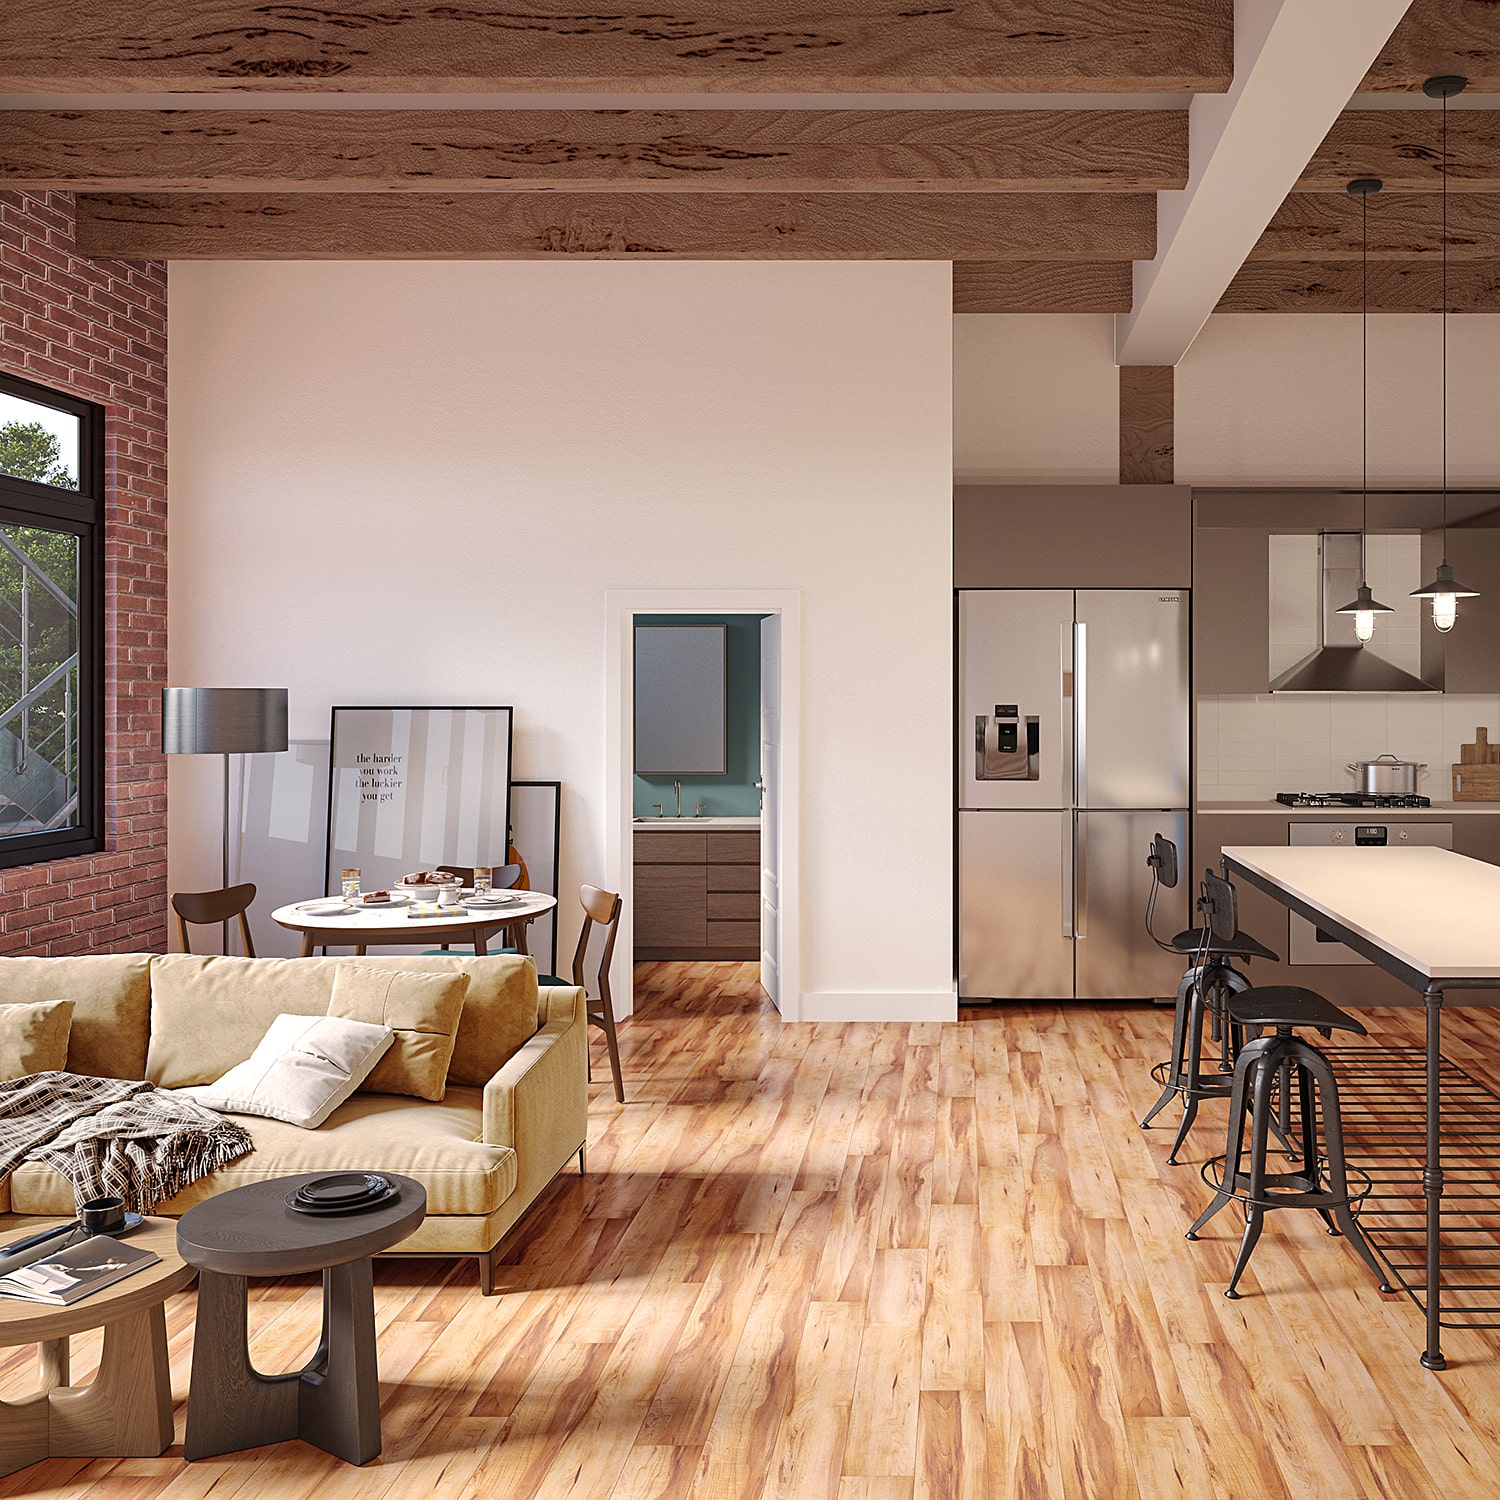 Wood look floor tiles used in living room environment